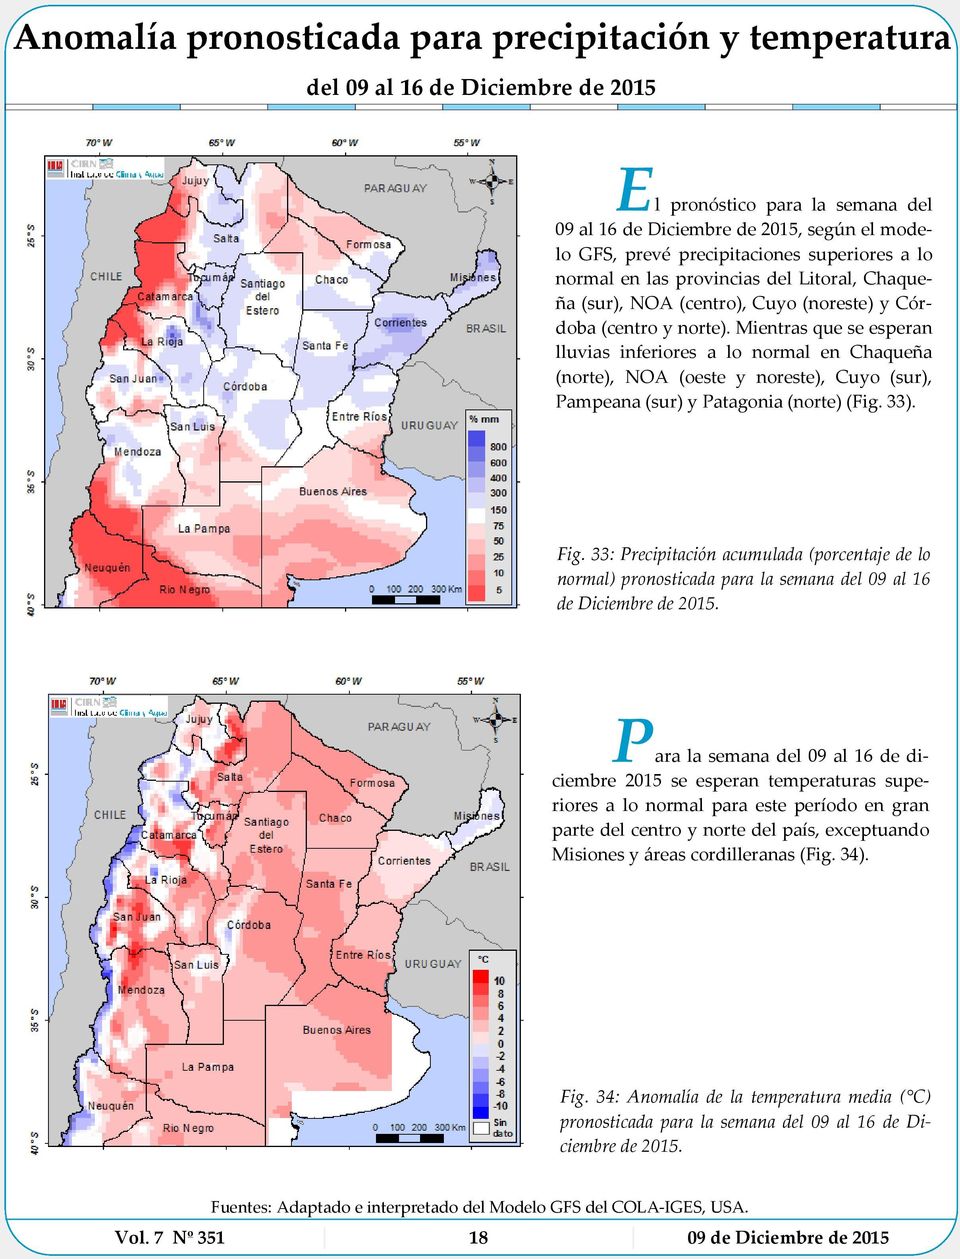 Mientras que se esperan lluvias inferiores a lo normal en Chaqueña (norte), NOA (oeste y noreste), Cuyo (sur), Pampeana (sur) y Patagonia (norte) (Fig. 33). Fig.